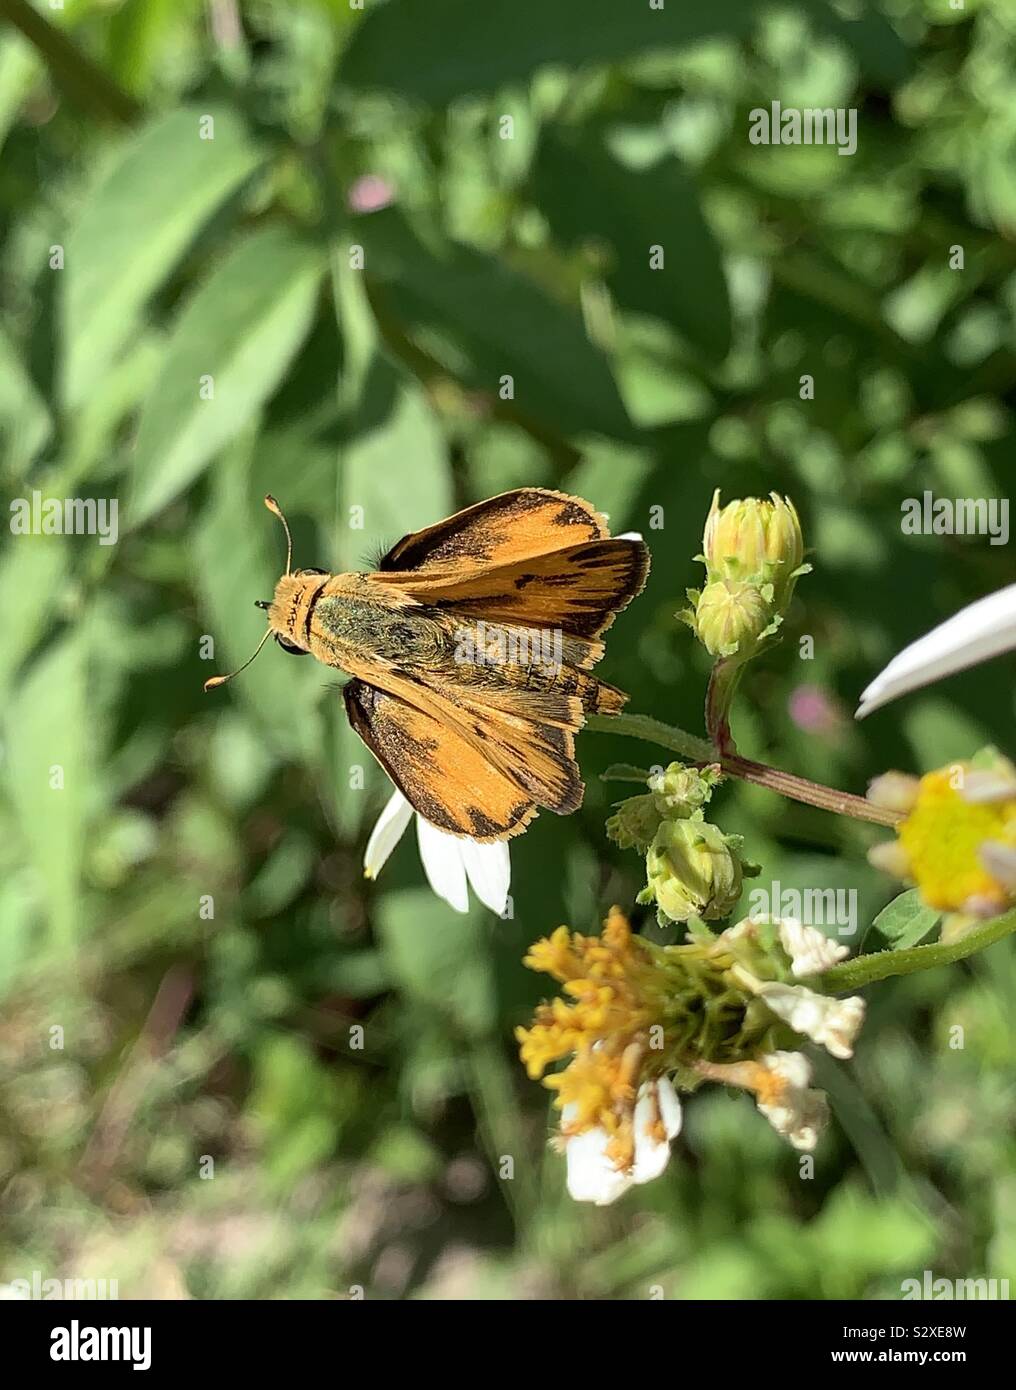 Macro of a fiery skipper golden butterfly on daisy wildflowers Stock Photo